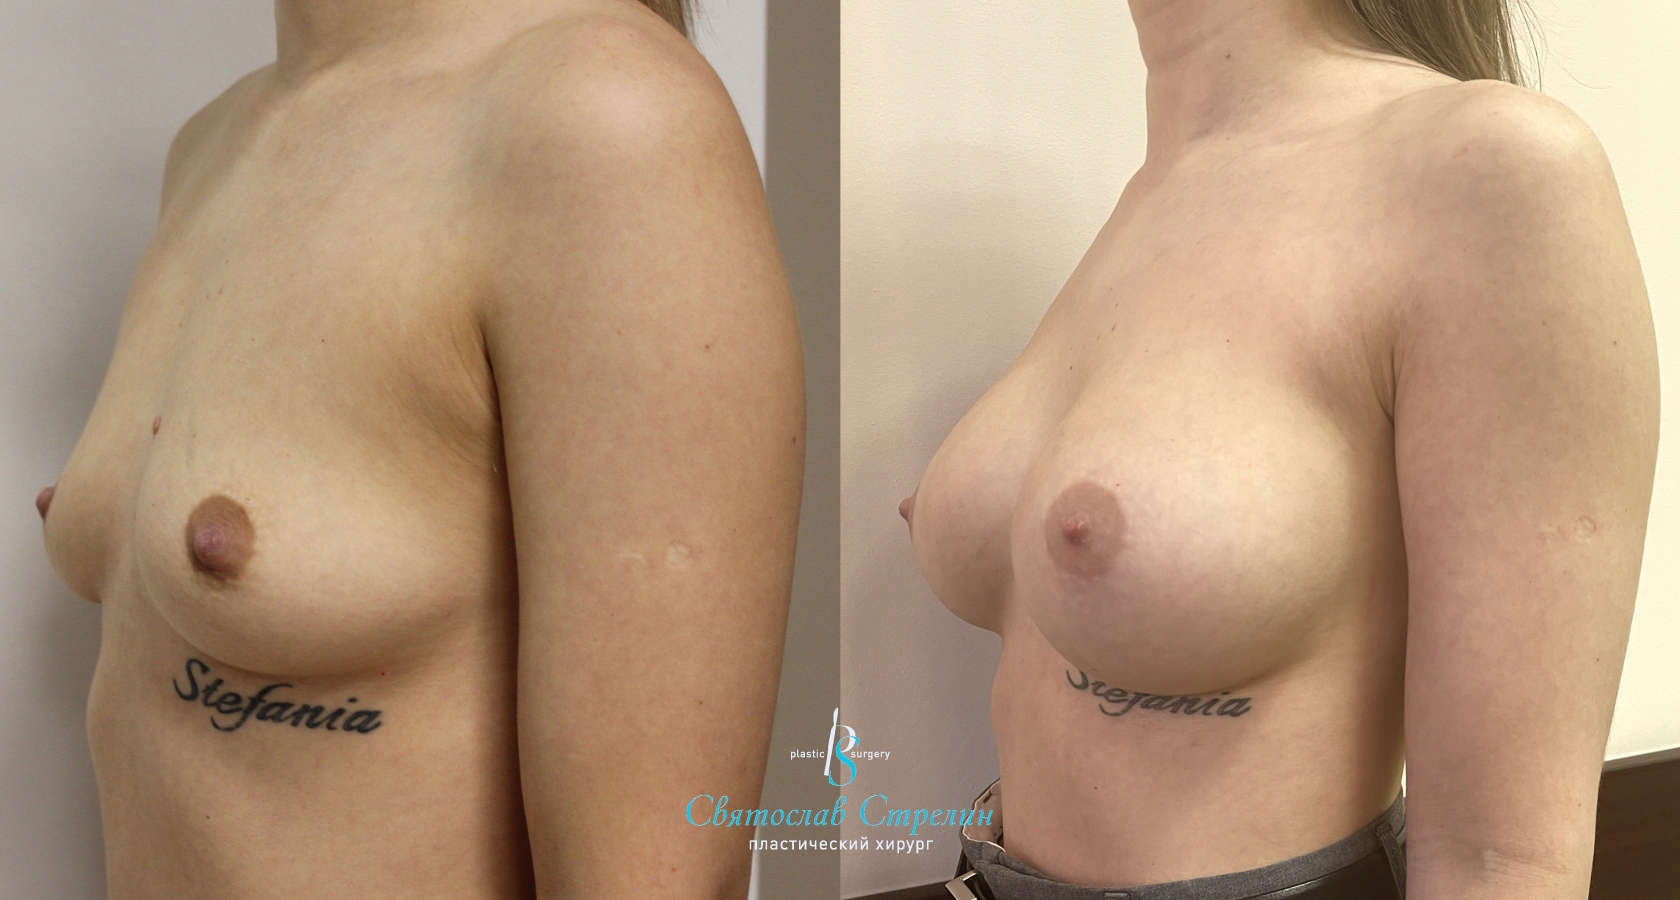 Увеличение груди, 4 месяца после операции, импланты Себбин 370 мл, анатомические, средняяв ысота, высокая проекция, доступ подмышечный